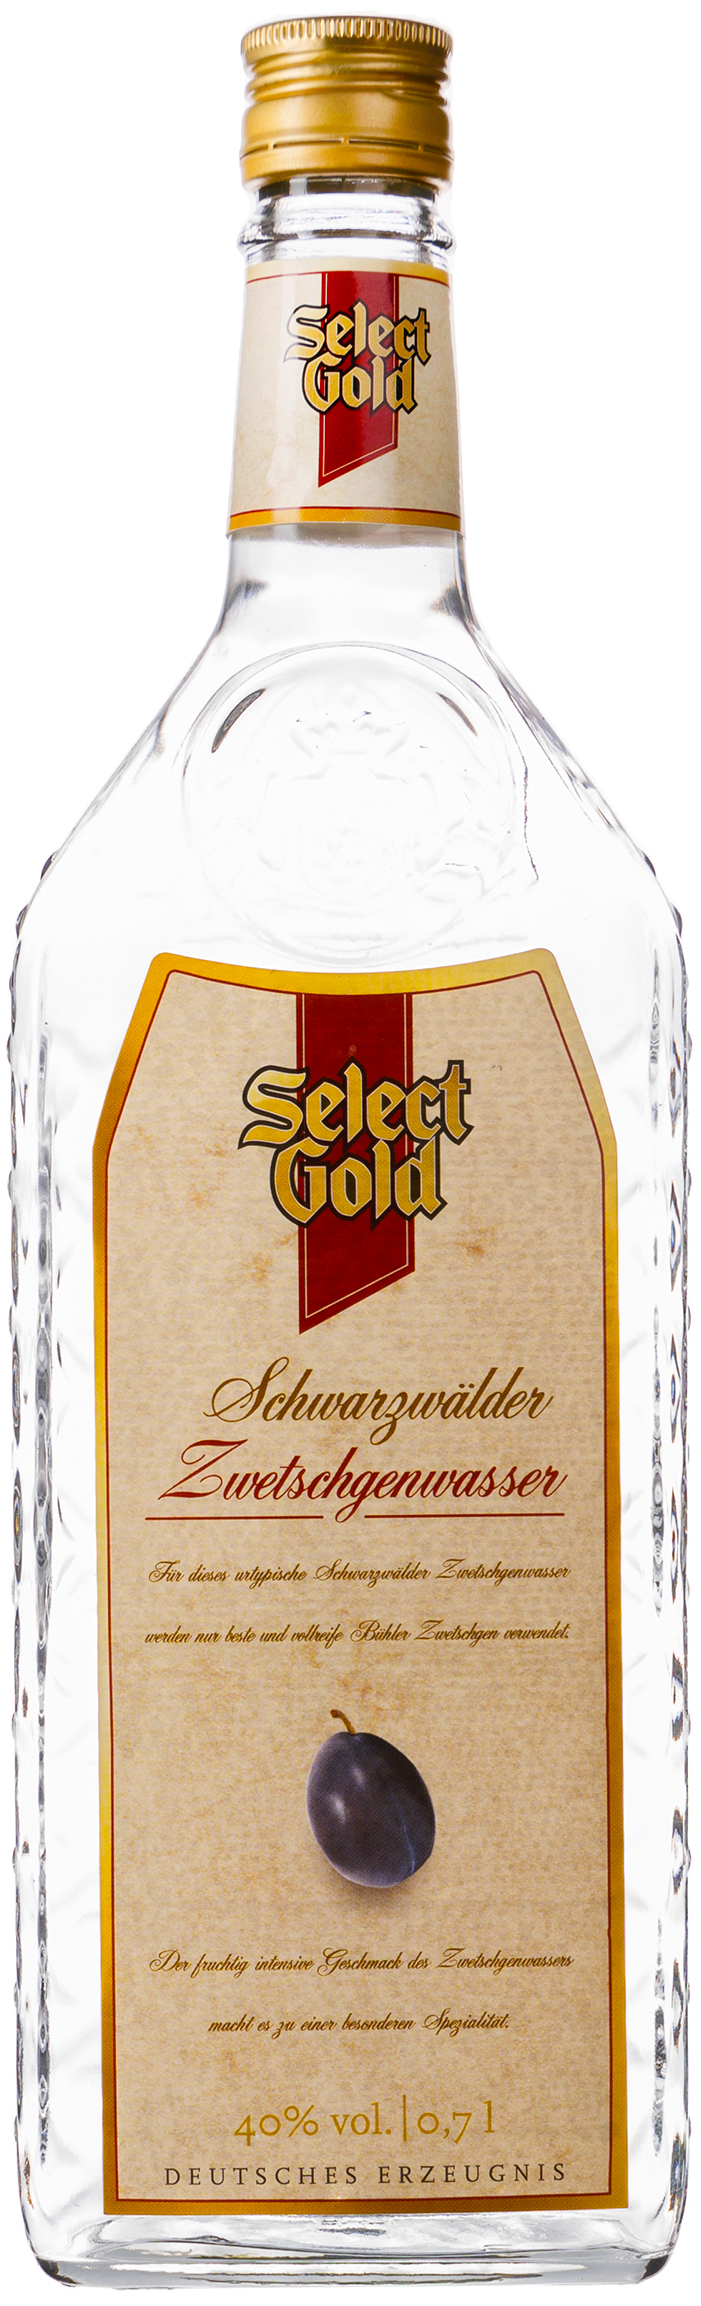 Select Gold Schwarzwälder Zwetschgenwasser 40% vol. 0,7L